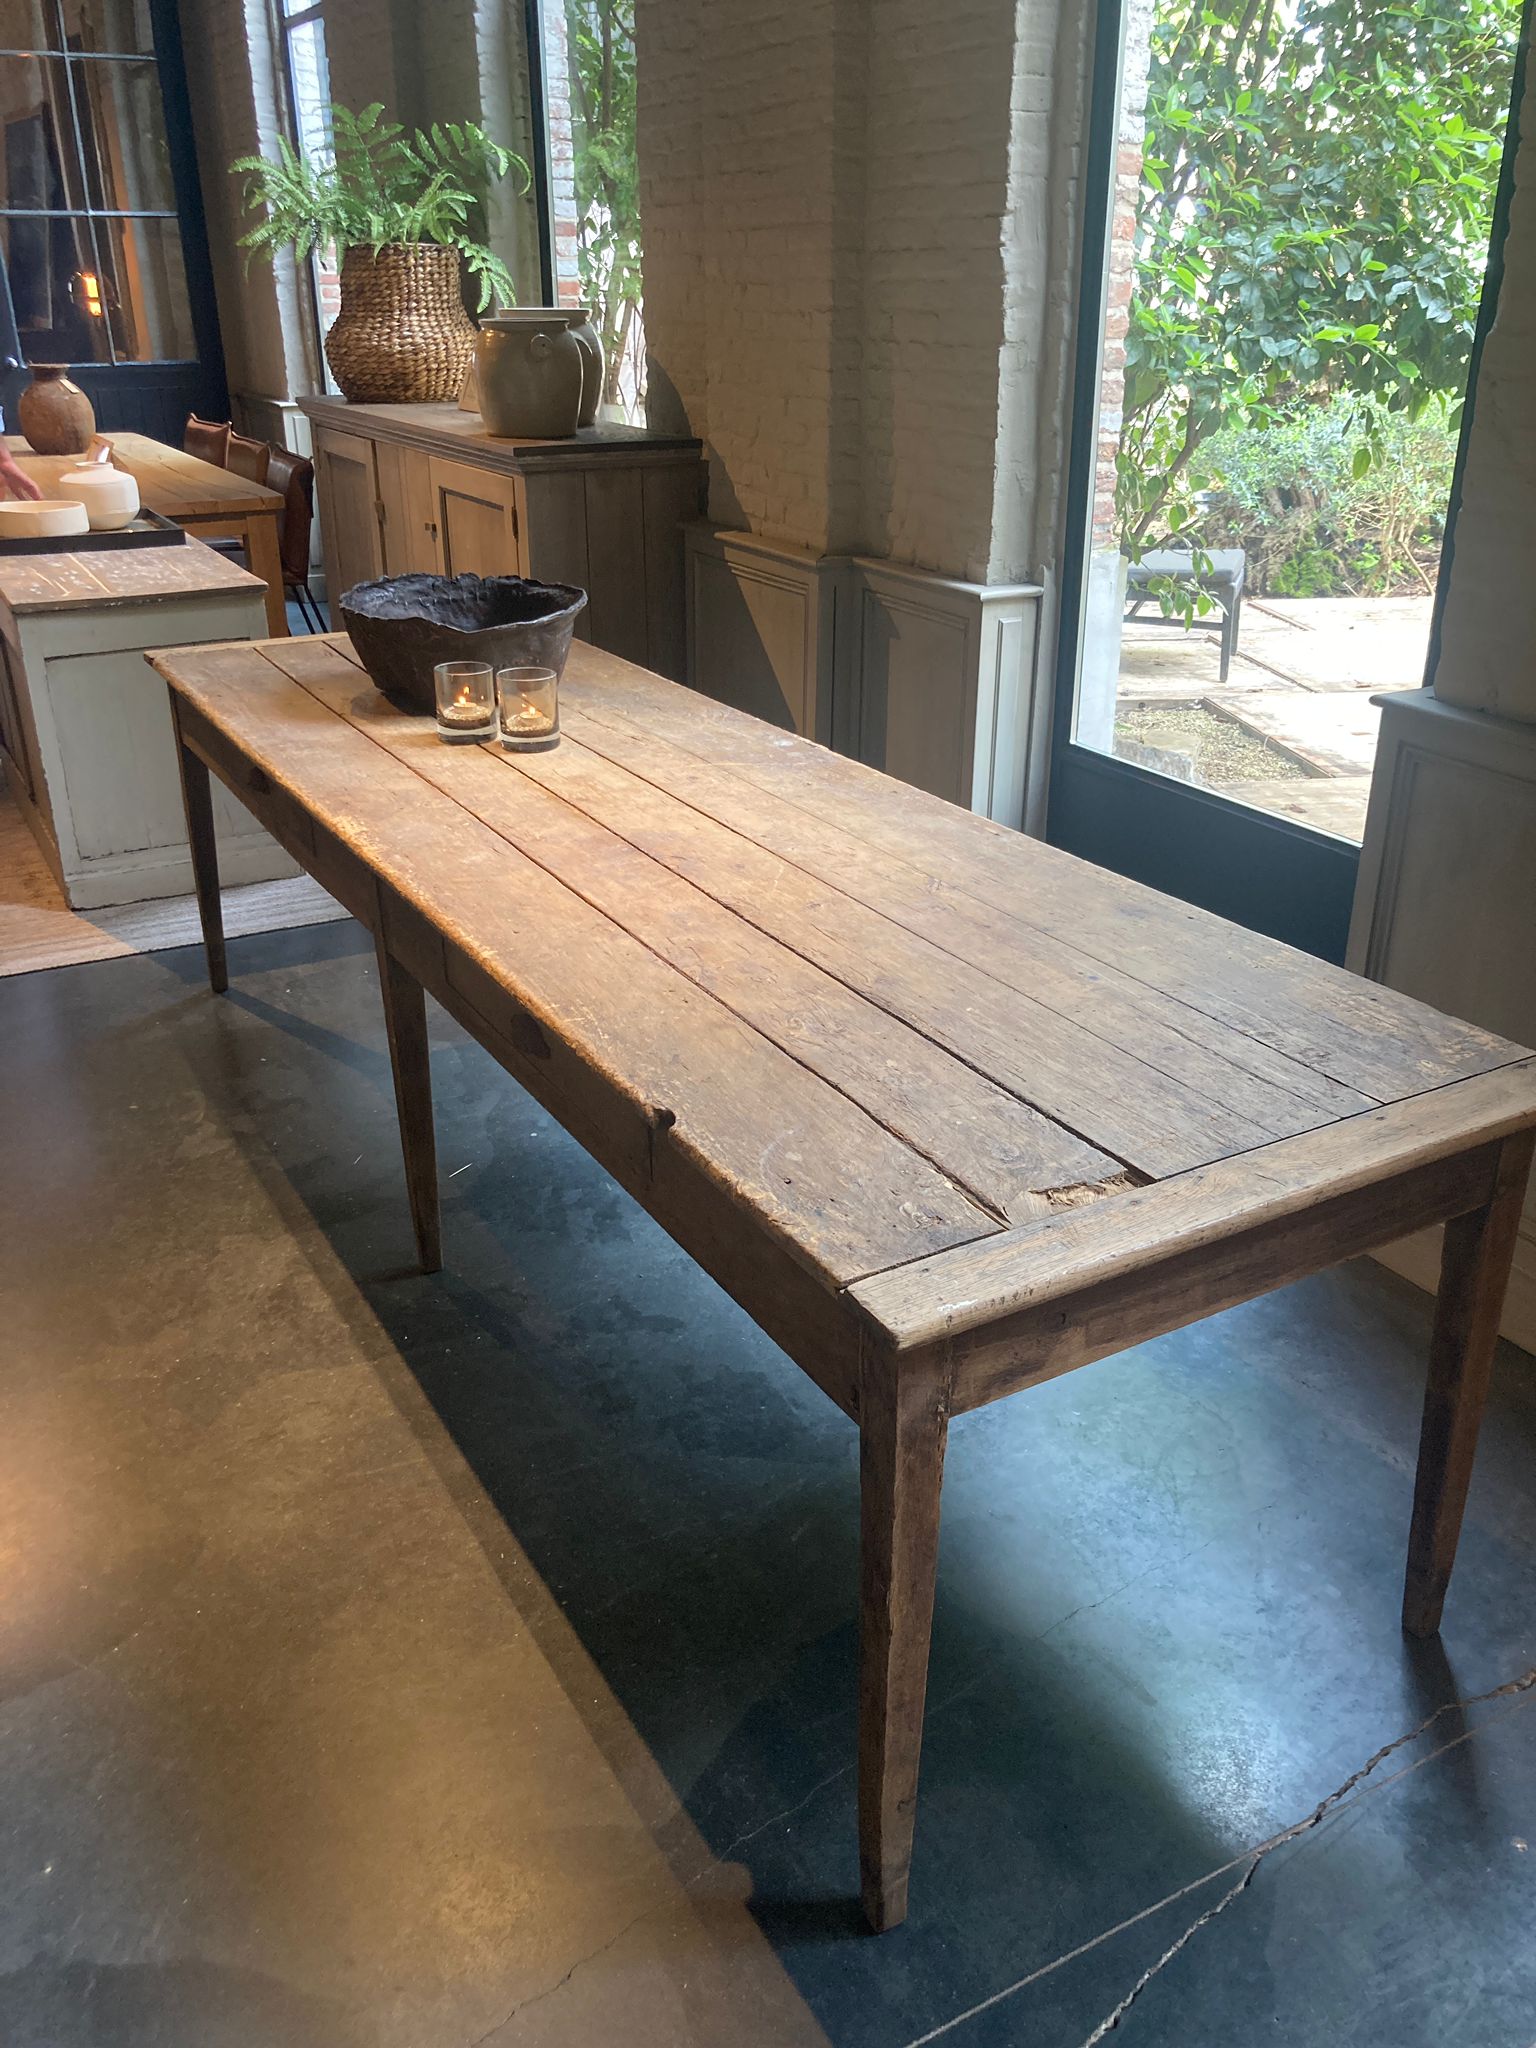 Woontheater Antwerpen Kloosterstraat Interieur meubels oude tafel hout verweerd rustiek authentiek robuust eettafel keuken eetkamer